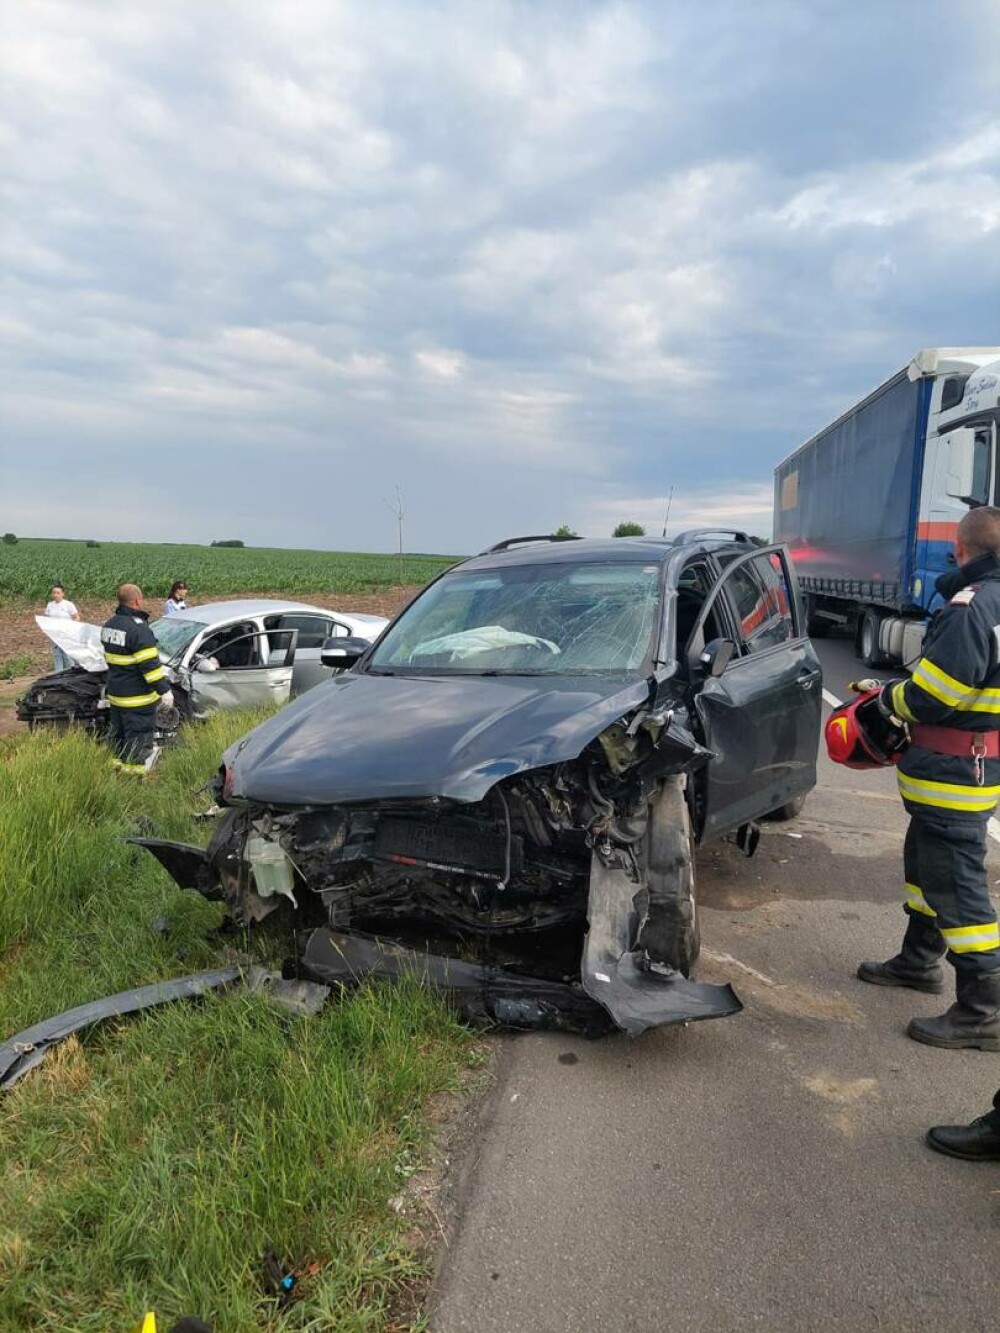 Ce s-a găsit în mașina șoferului care a murit în accidentul din Buzău și a provocat moartea unui copil - Imaginea 2